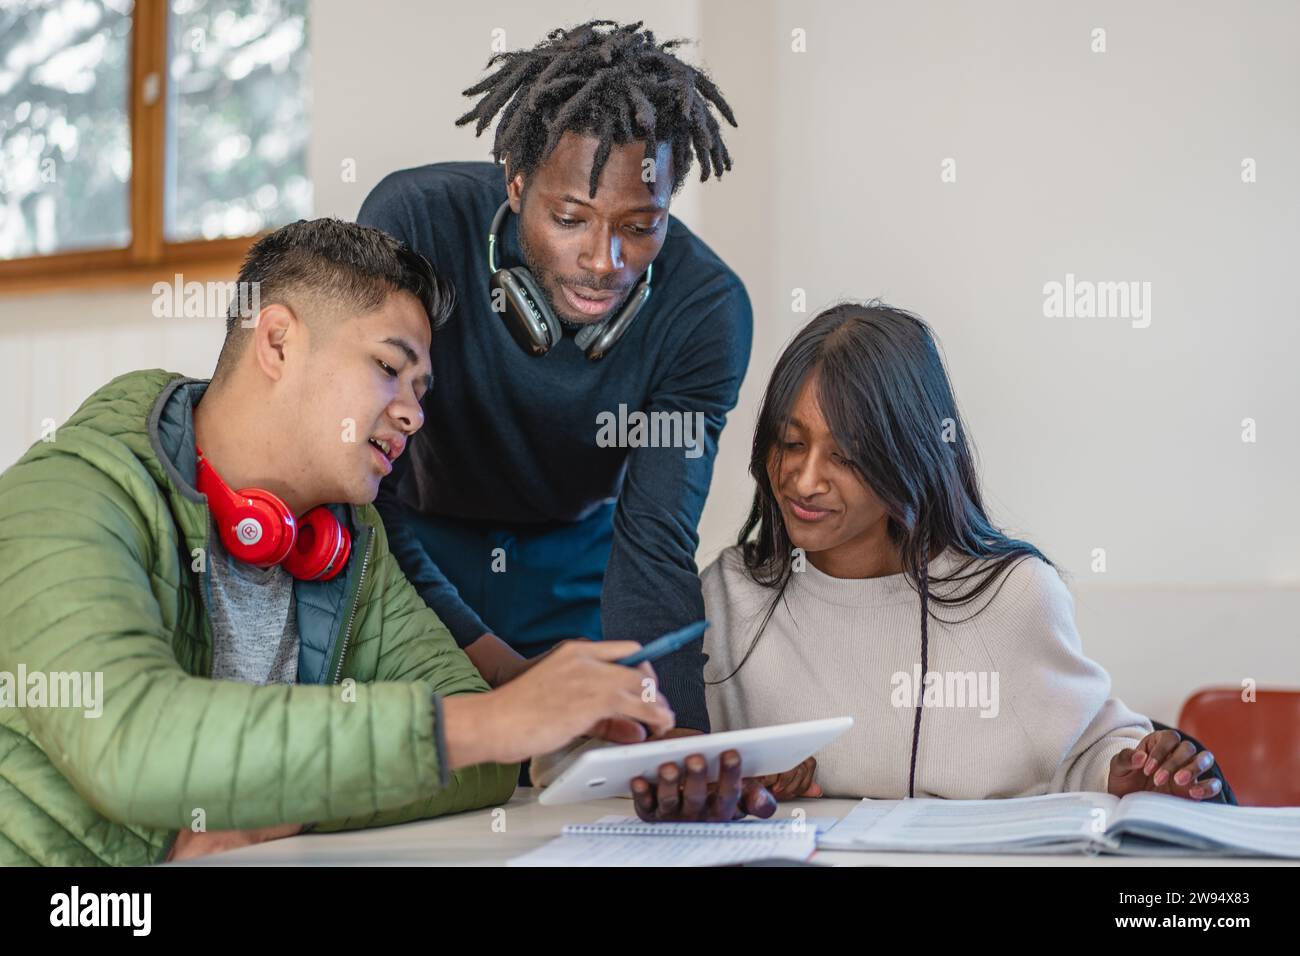 Drei multikulturelle Studenten nehmen an einer interaktiven Lernsitzung mit Notizen und digitalen Geräten Teil und teilen ihr Wissen. Stockfoto